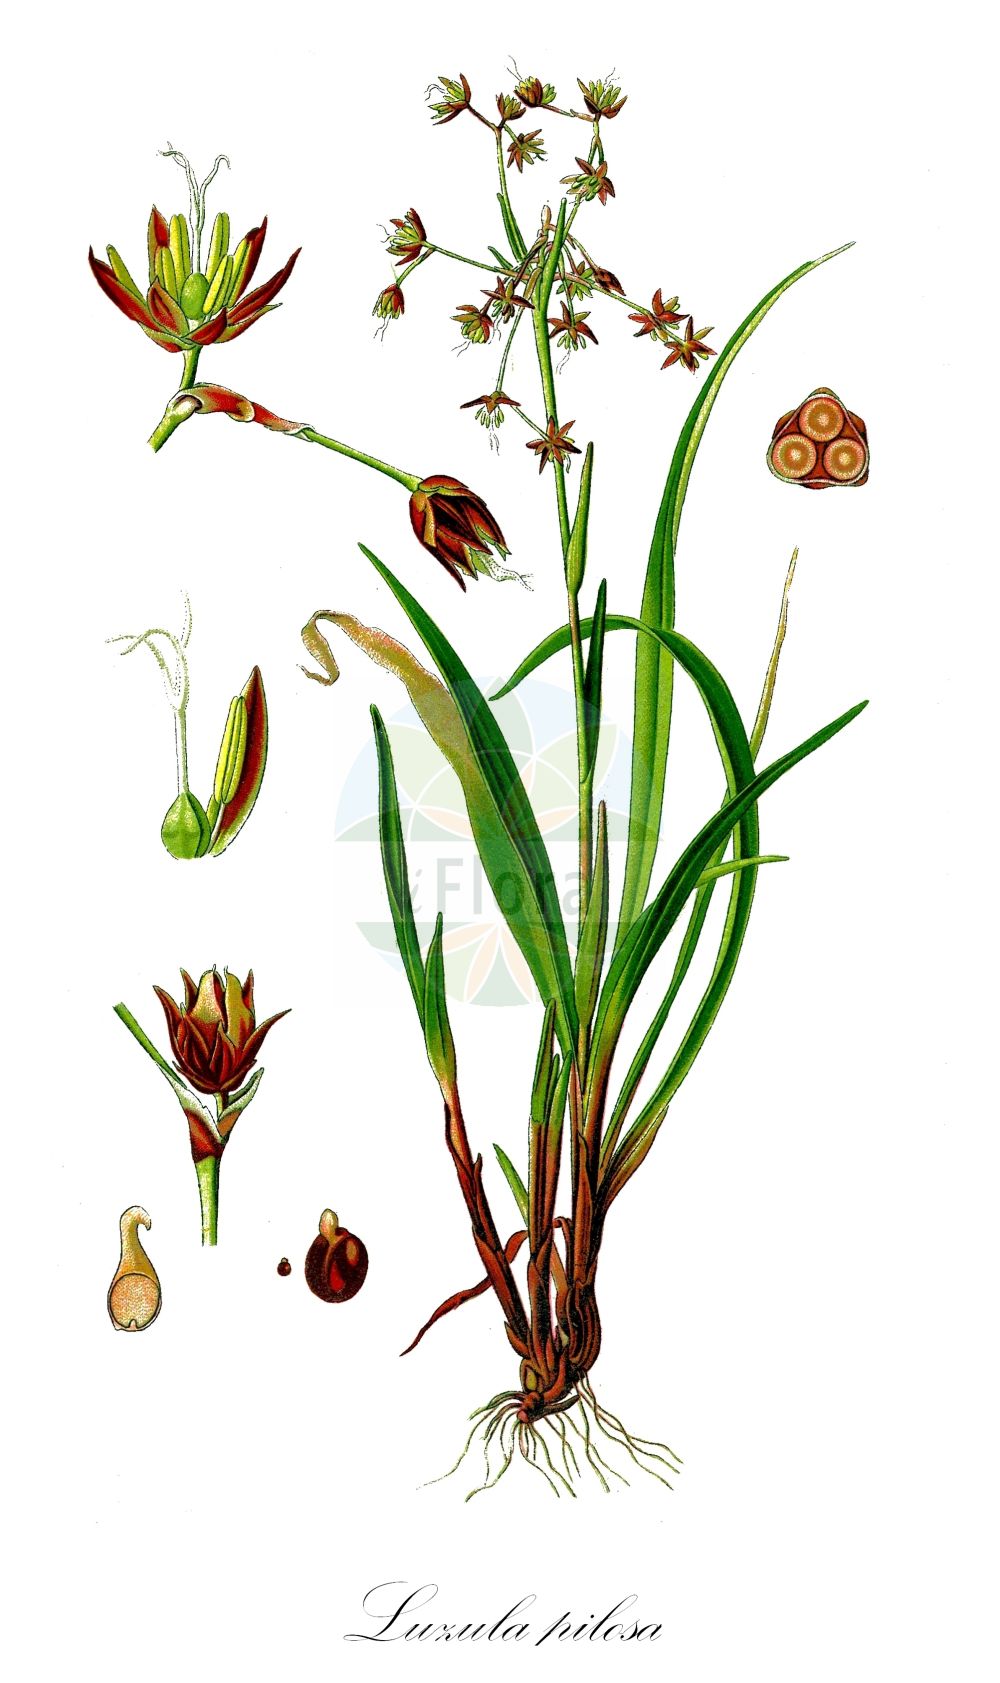 Historische Abbildung von Luzula pilosa (Behaarte Hainsimse - Hairy Wood-rush). Das Bild zeigt Blatt, Bluete, Frucht und Same. ---- Historical Drawing of Luzula pilosa (Behaarte Hainsimse - Hairy Wood-rush). The image is showing leaf, flower, fruit and seed.(Luzula pilosa,Behaarte Hainsimse,Hairy Wood-rush,Juncoides pilosa,Juncus pilosus,Juncus vernalis,Luciola pilosa,Luzula cechica,Luzula pilosa,Luzula vernalis,Nemorinia vernalis,Pterodes pilosus,Behaarte Hainsimse,Fruehlings-Hainsimse,Wimper-Hainsimse,Hairy Wood-rush,Luzula,Hainsimse,Wood-rush,Juncaceae,Binsengewächse,Rush family,Blatt,Bluete,Frucht,Same,leaf,flower,fruit,seed,Thomé (1885))